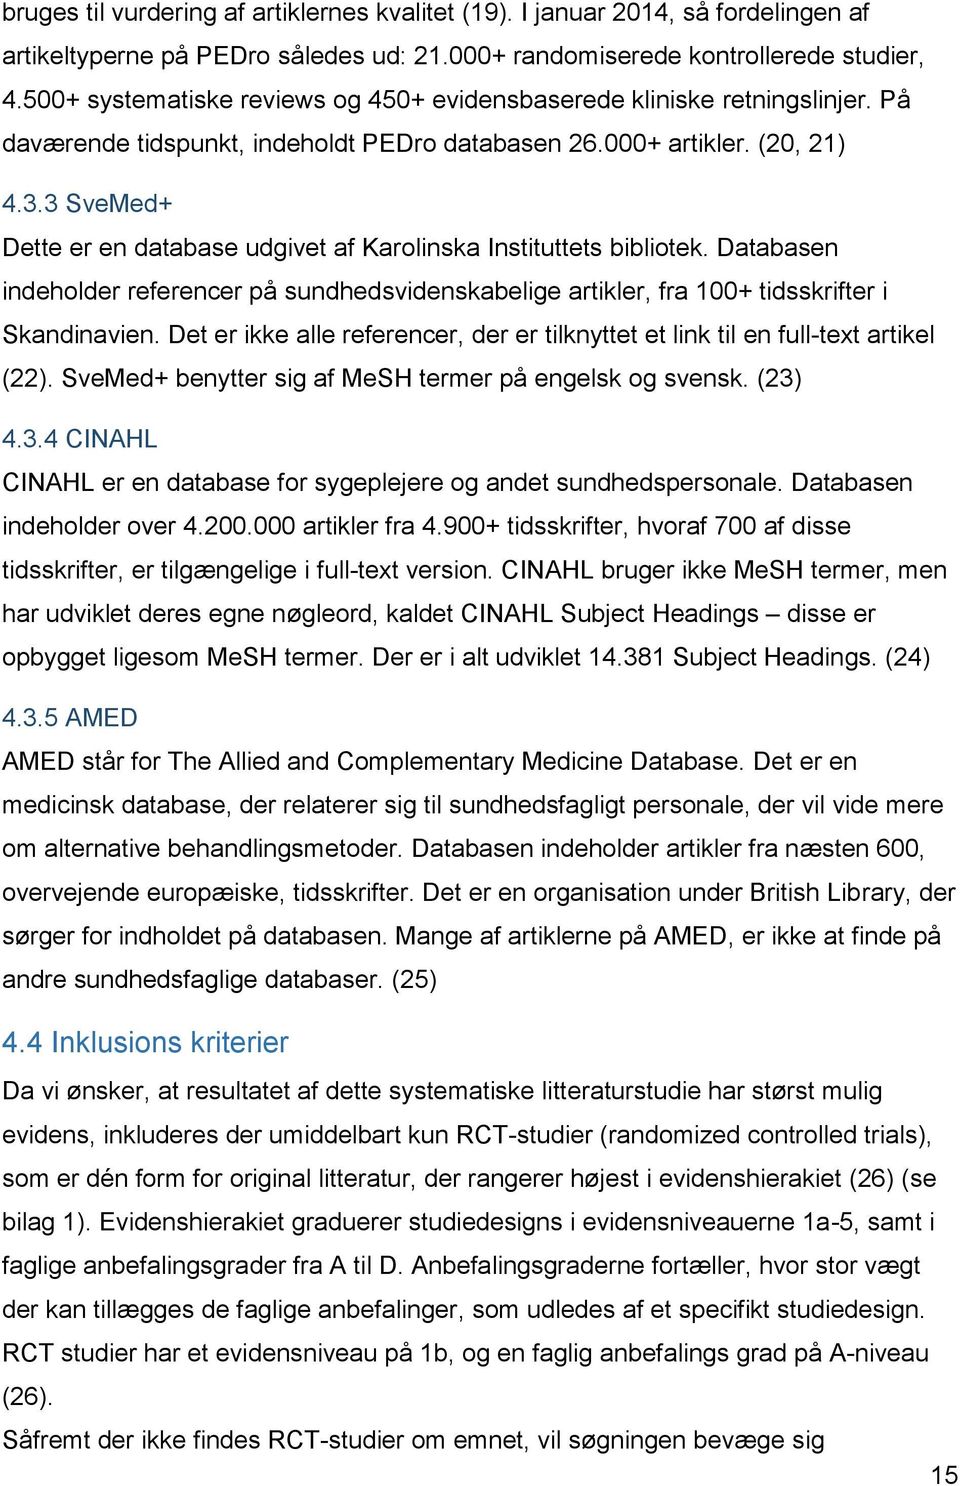 3 SveMed+ Dette er en database udgivet af Karolinska Instituttets bibliotek. Databasen indeholder referencer på sundhedsvidenskabelige artikler, fra 100+ tidsskrifter i Skandinavien.